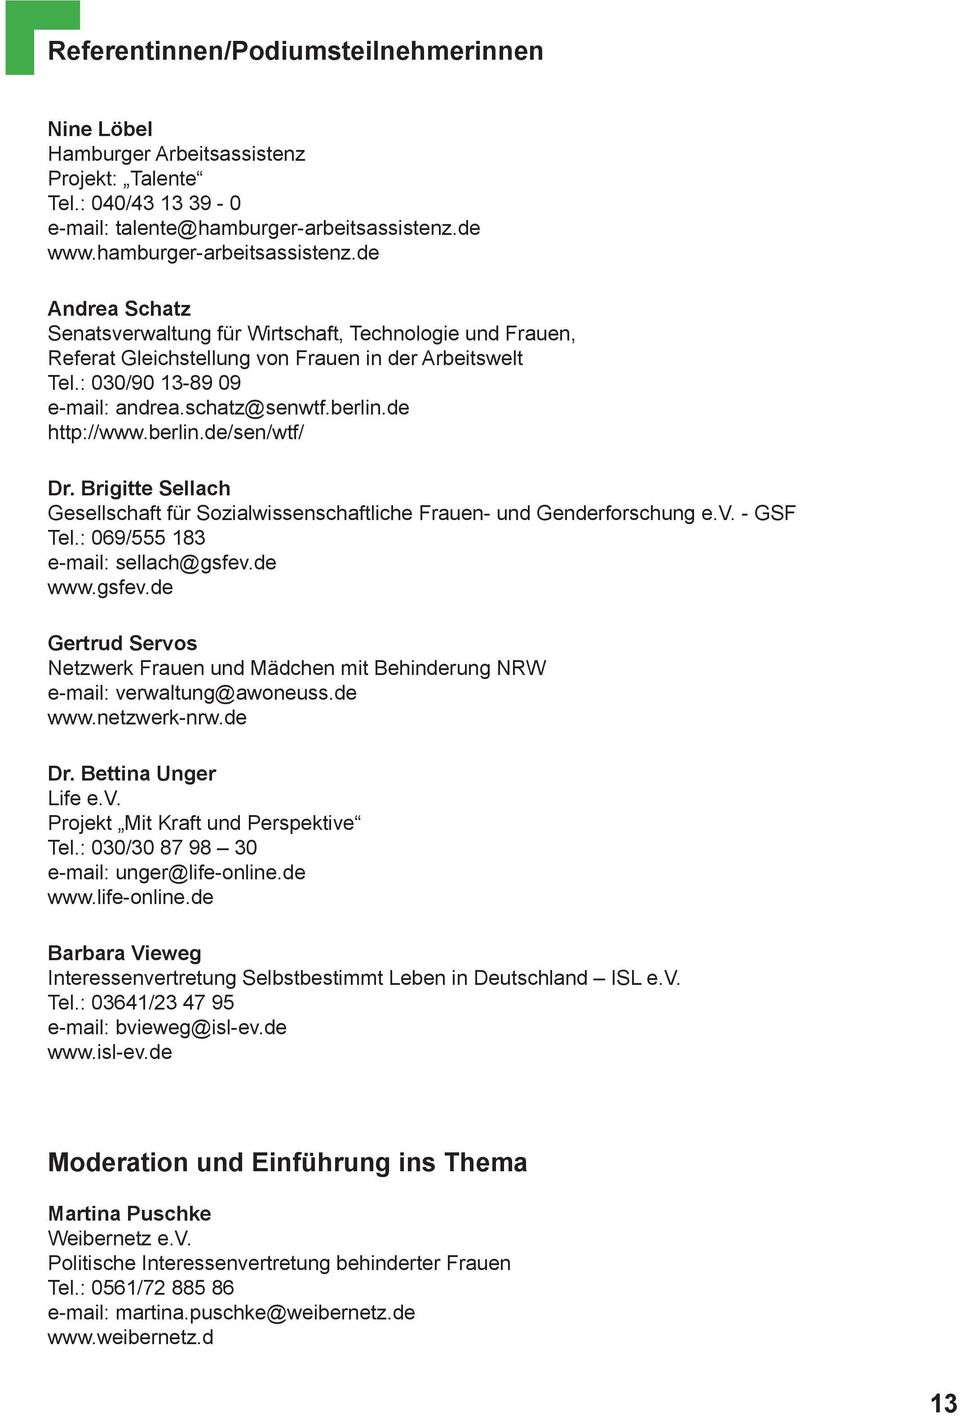 schatz@senwtf.berlin.de http://www.berlin.de/sen/wtf/ Dr. Brigitte Sellach Gesellschaft für Sozialwissenschaftliche Frauen- und Genderforschung e.v. - GSF Tel.: 069/555 183 e-mail: sellach@gsfev.